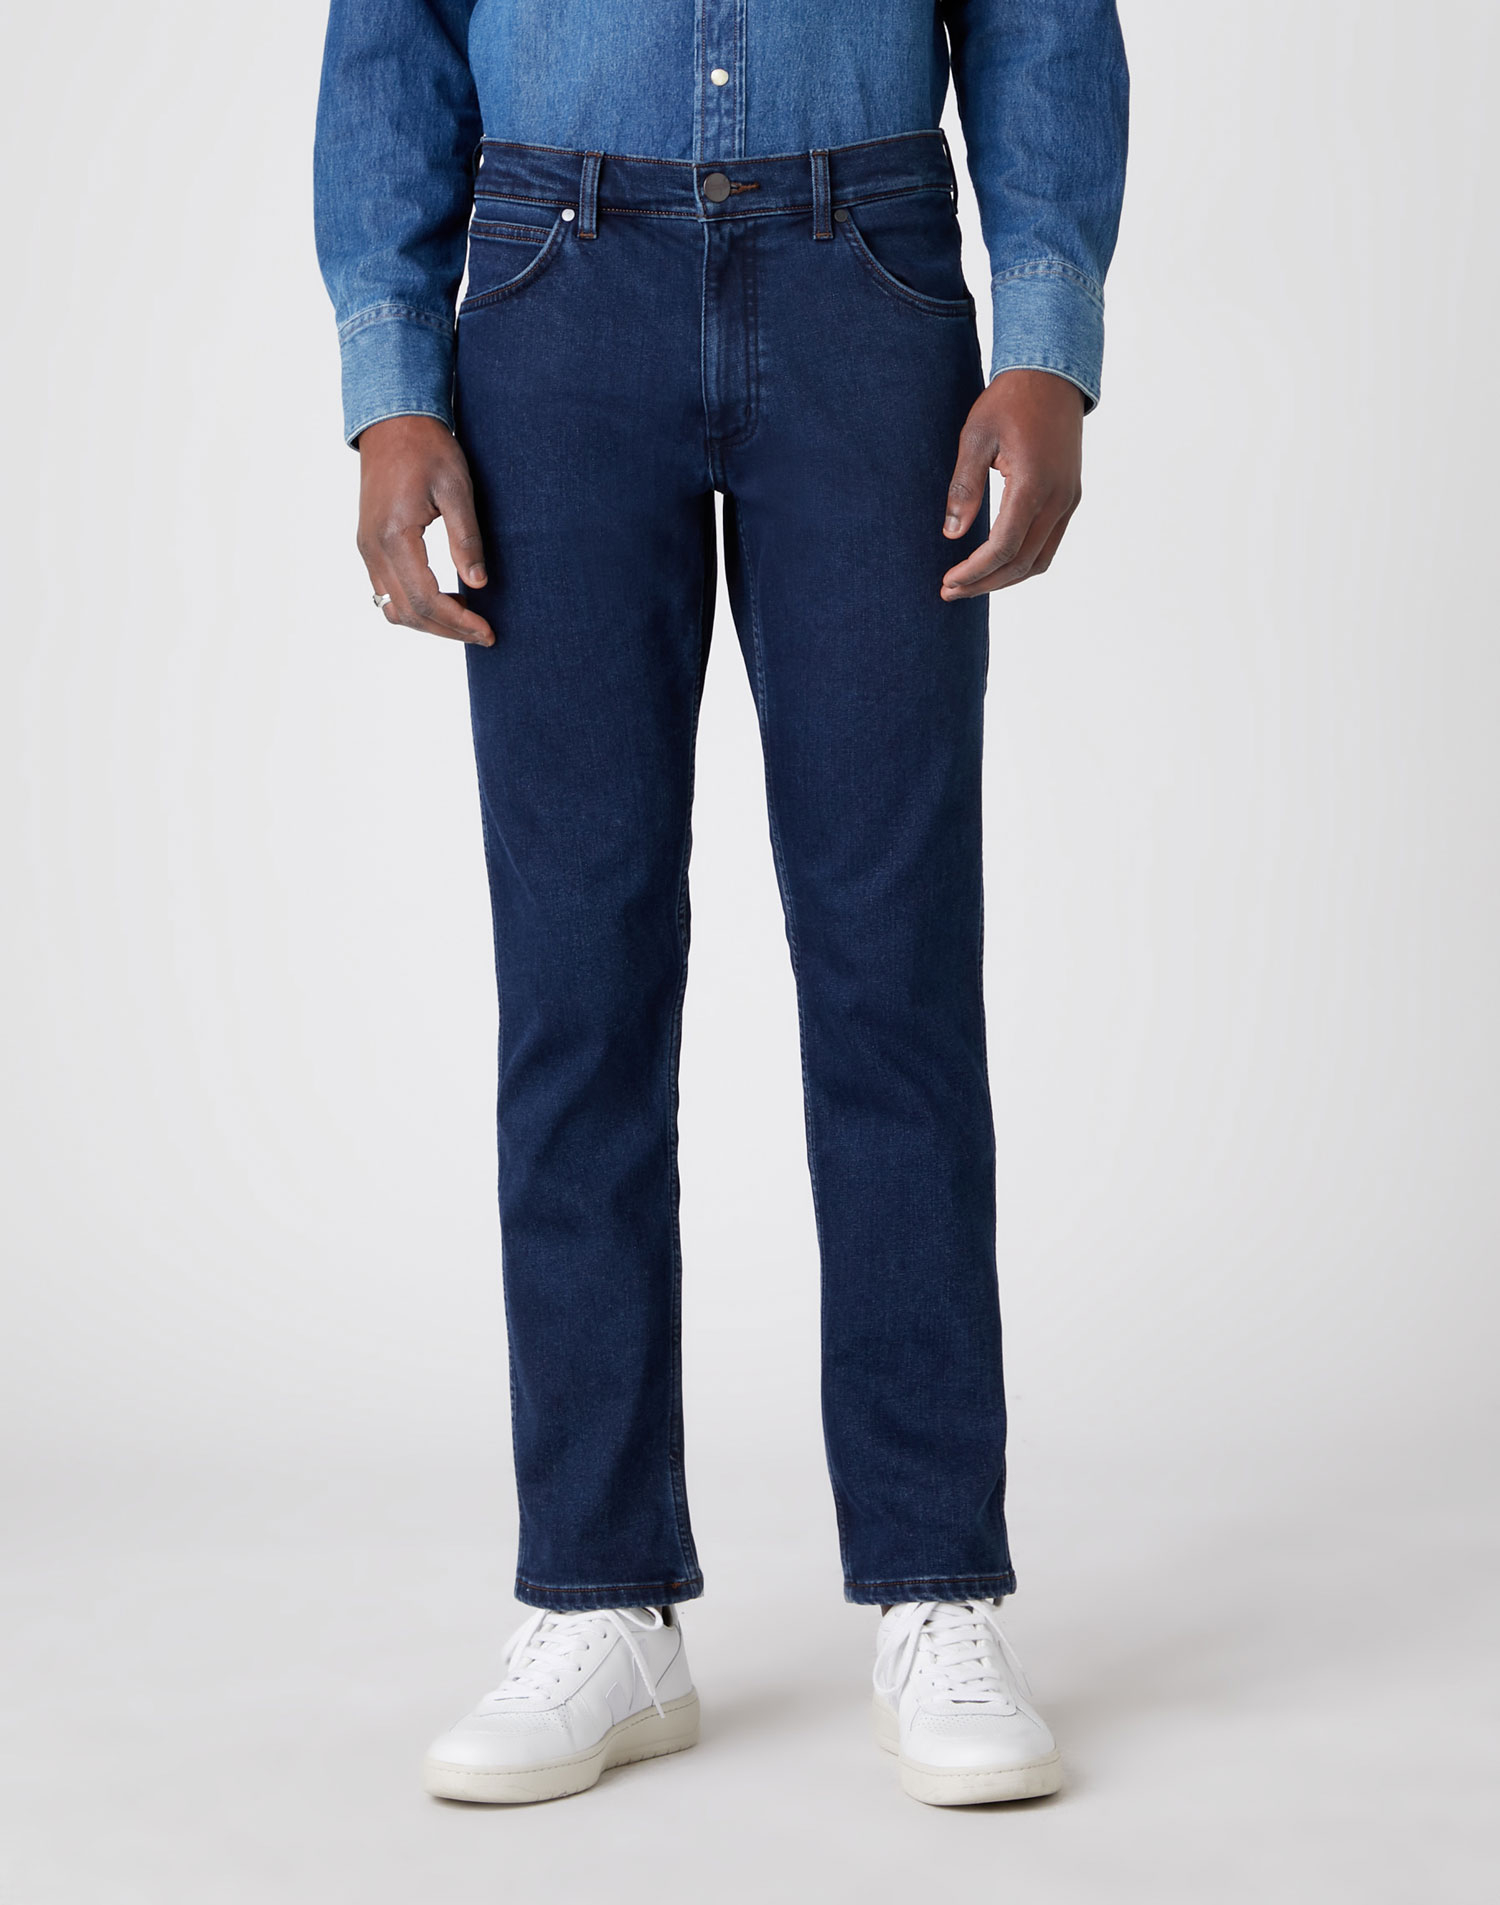 Wrangler Greensboro slim brushed pantalones vaqueros de hombre W15QZ123B azul medio